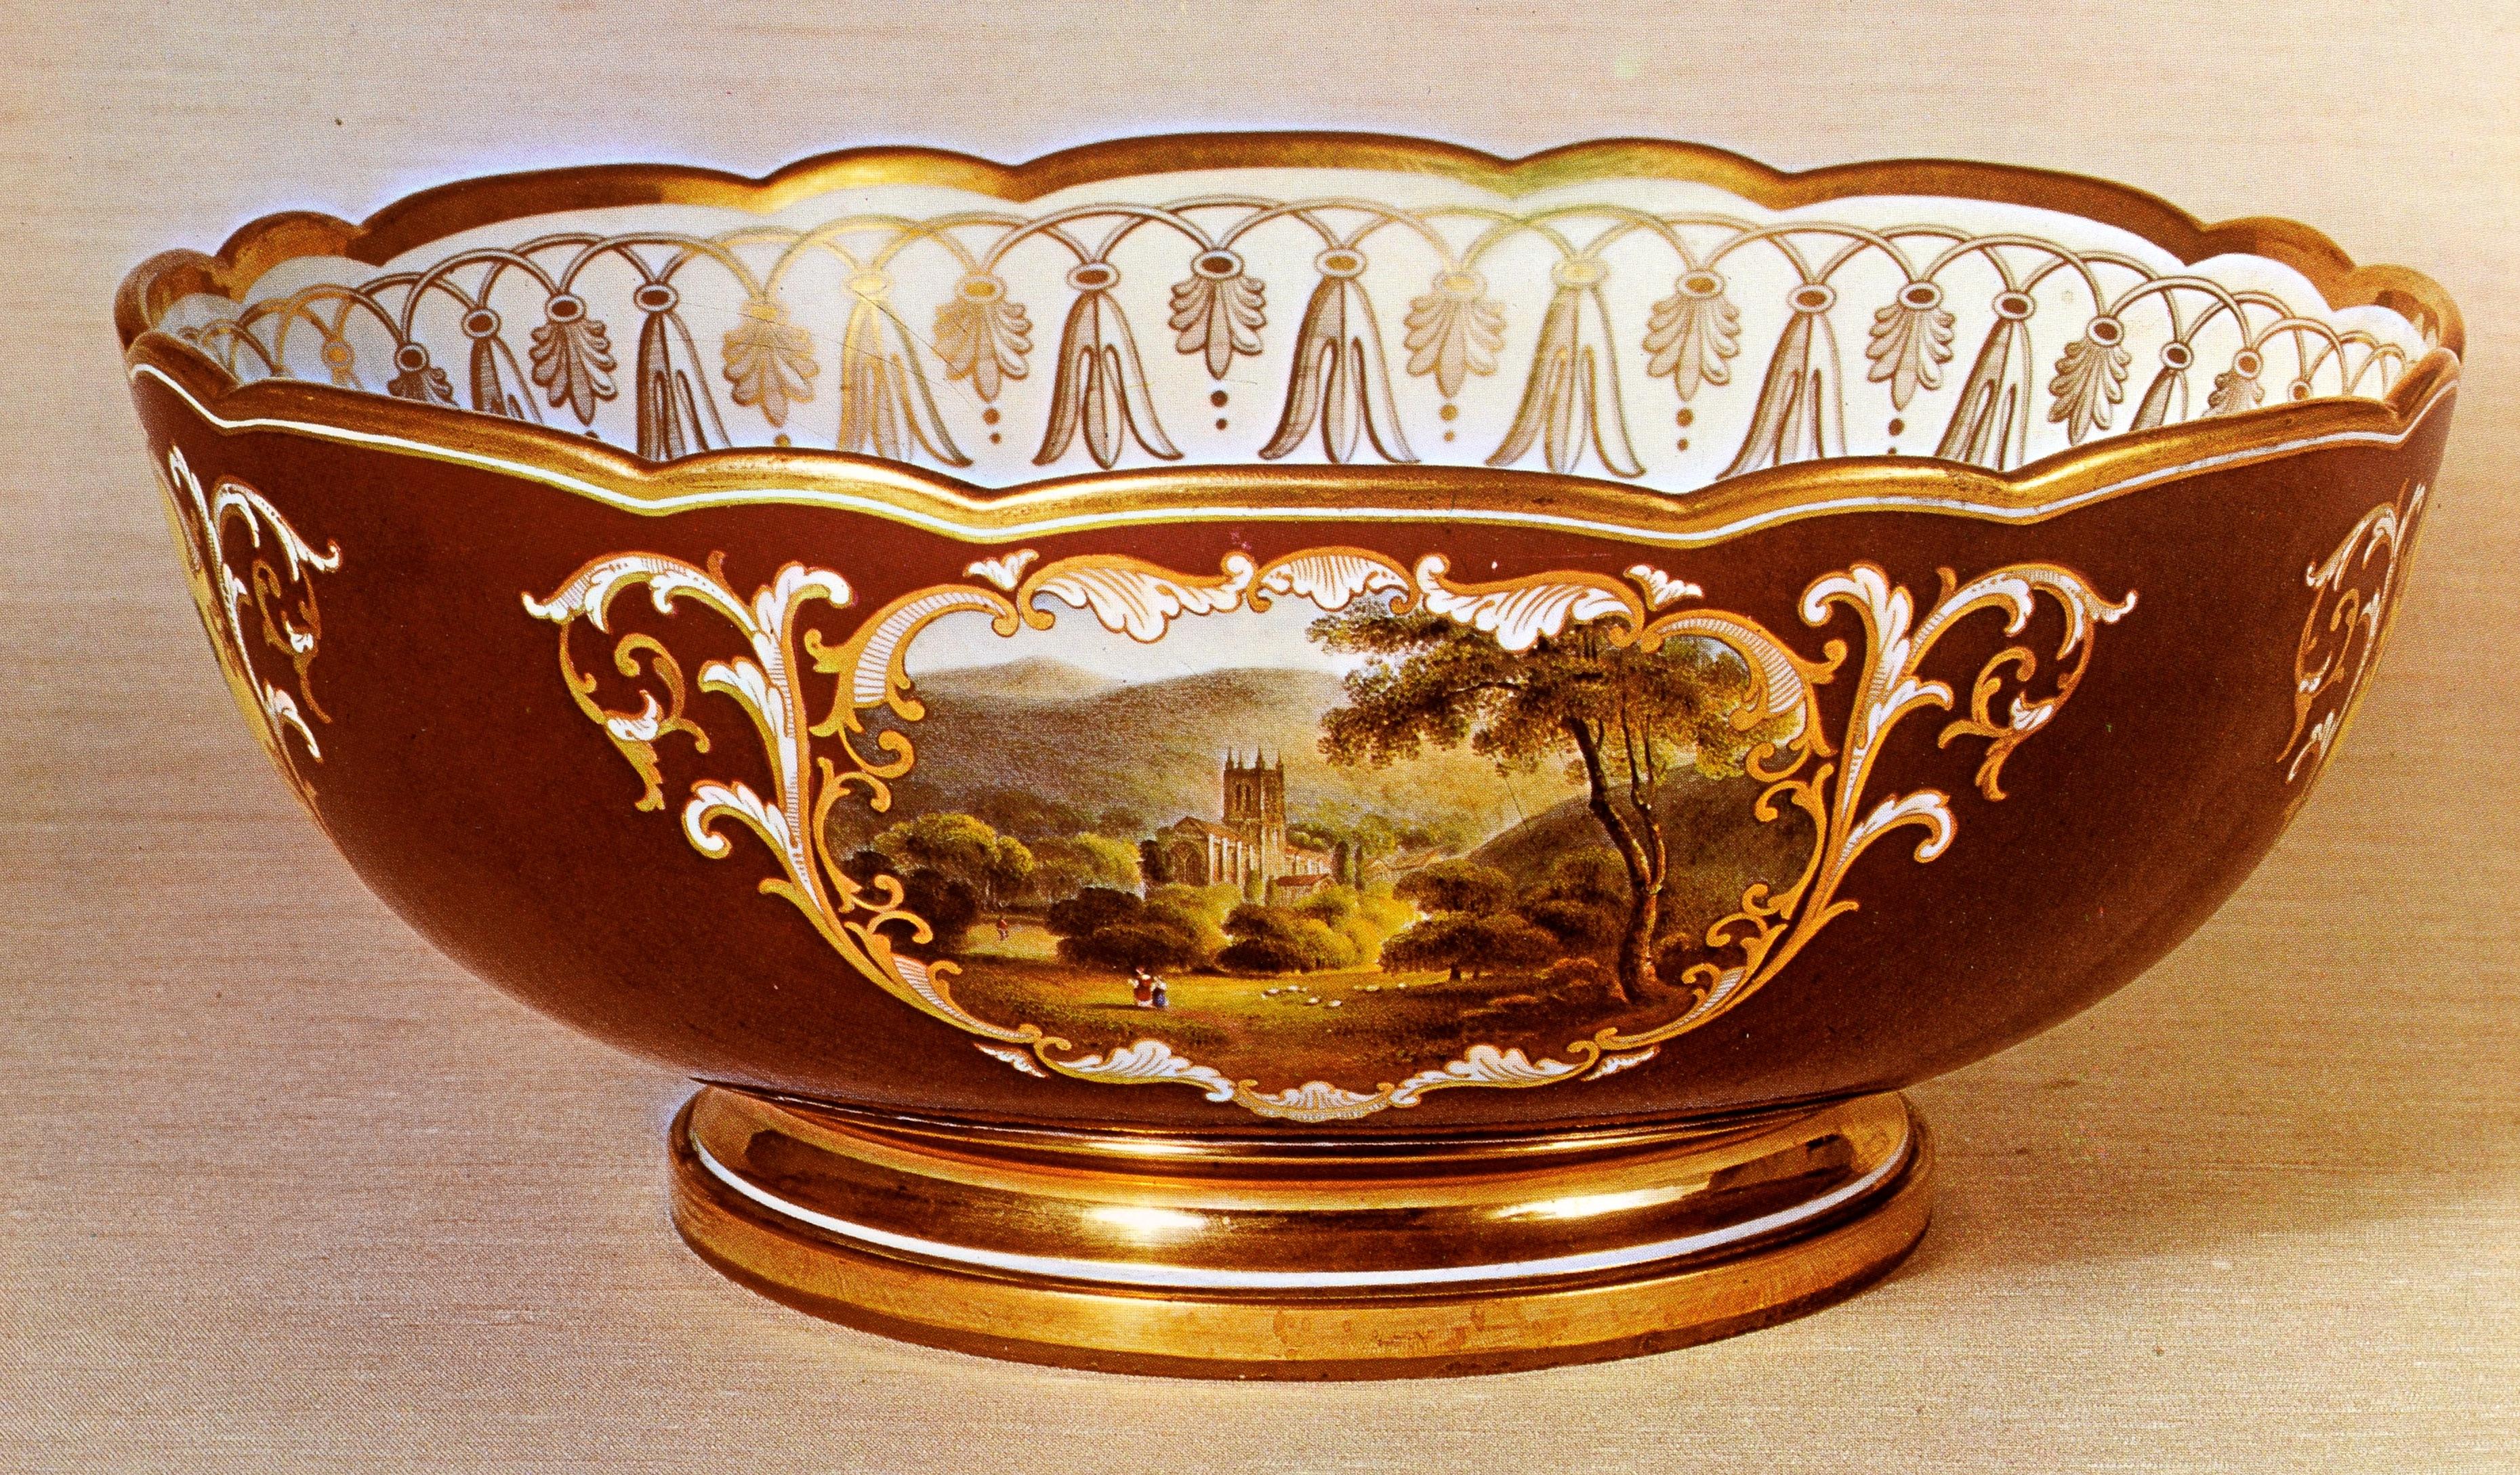 Flight and Barr Worcester Porcelain 1783-1840 by Henry Sandon For Sale 3